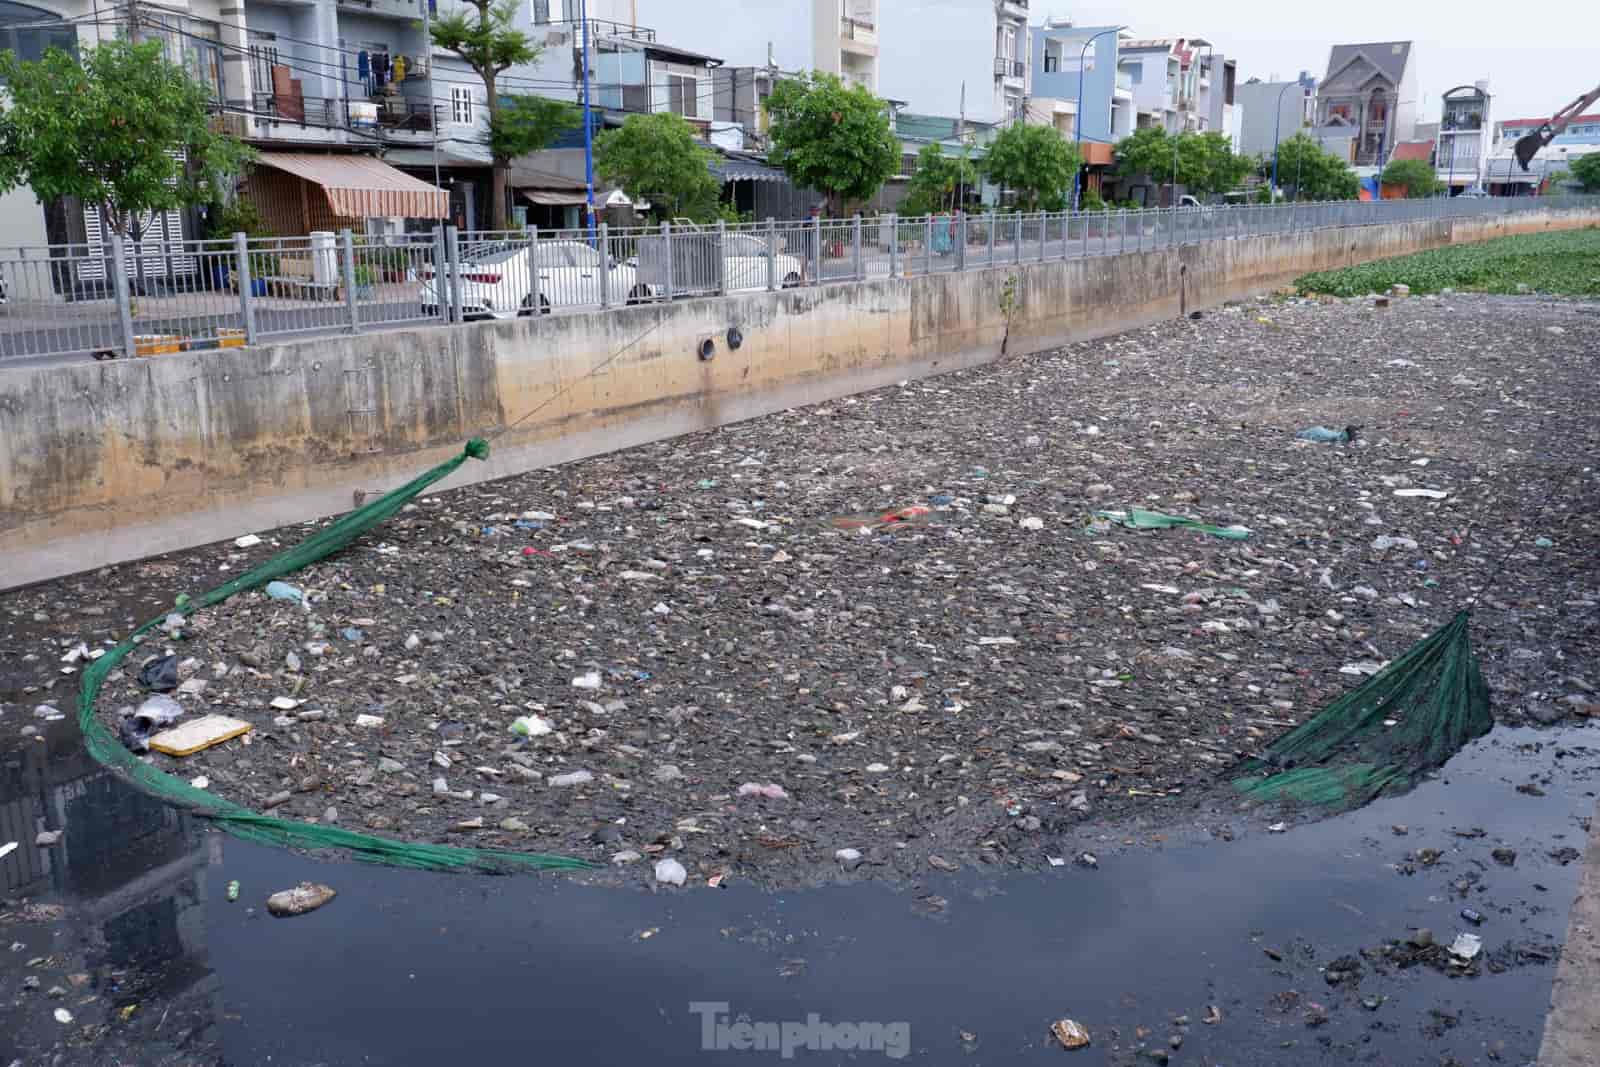 Nhọc nhằn cảnh công nhân vệ sinh ngâm mình giữa nước kênh đen ngòm, hôi thối vớt gần trăm tấn rác